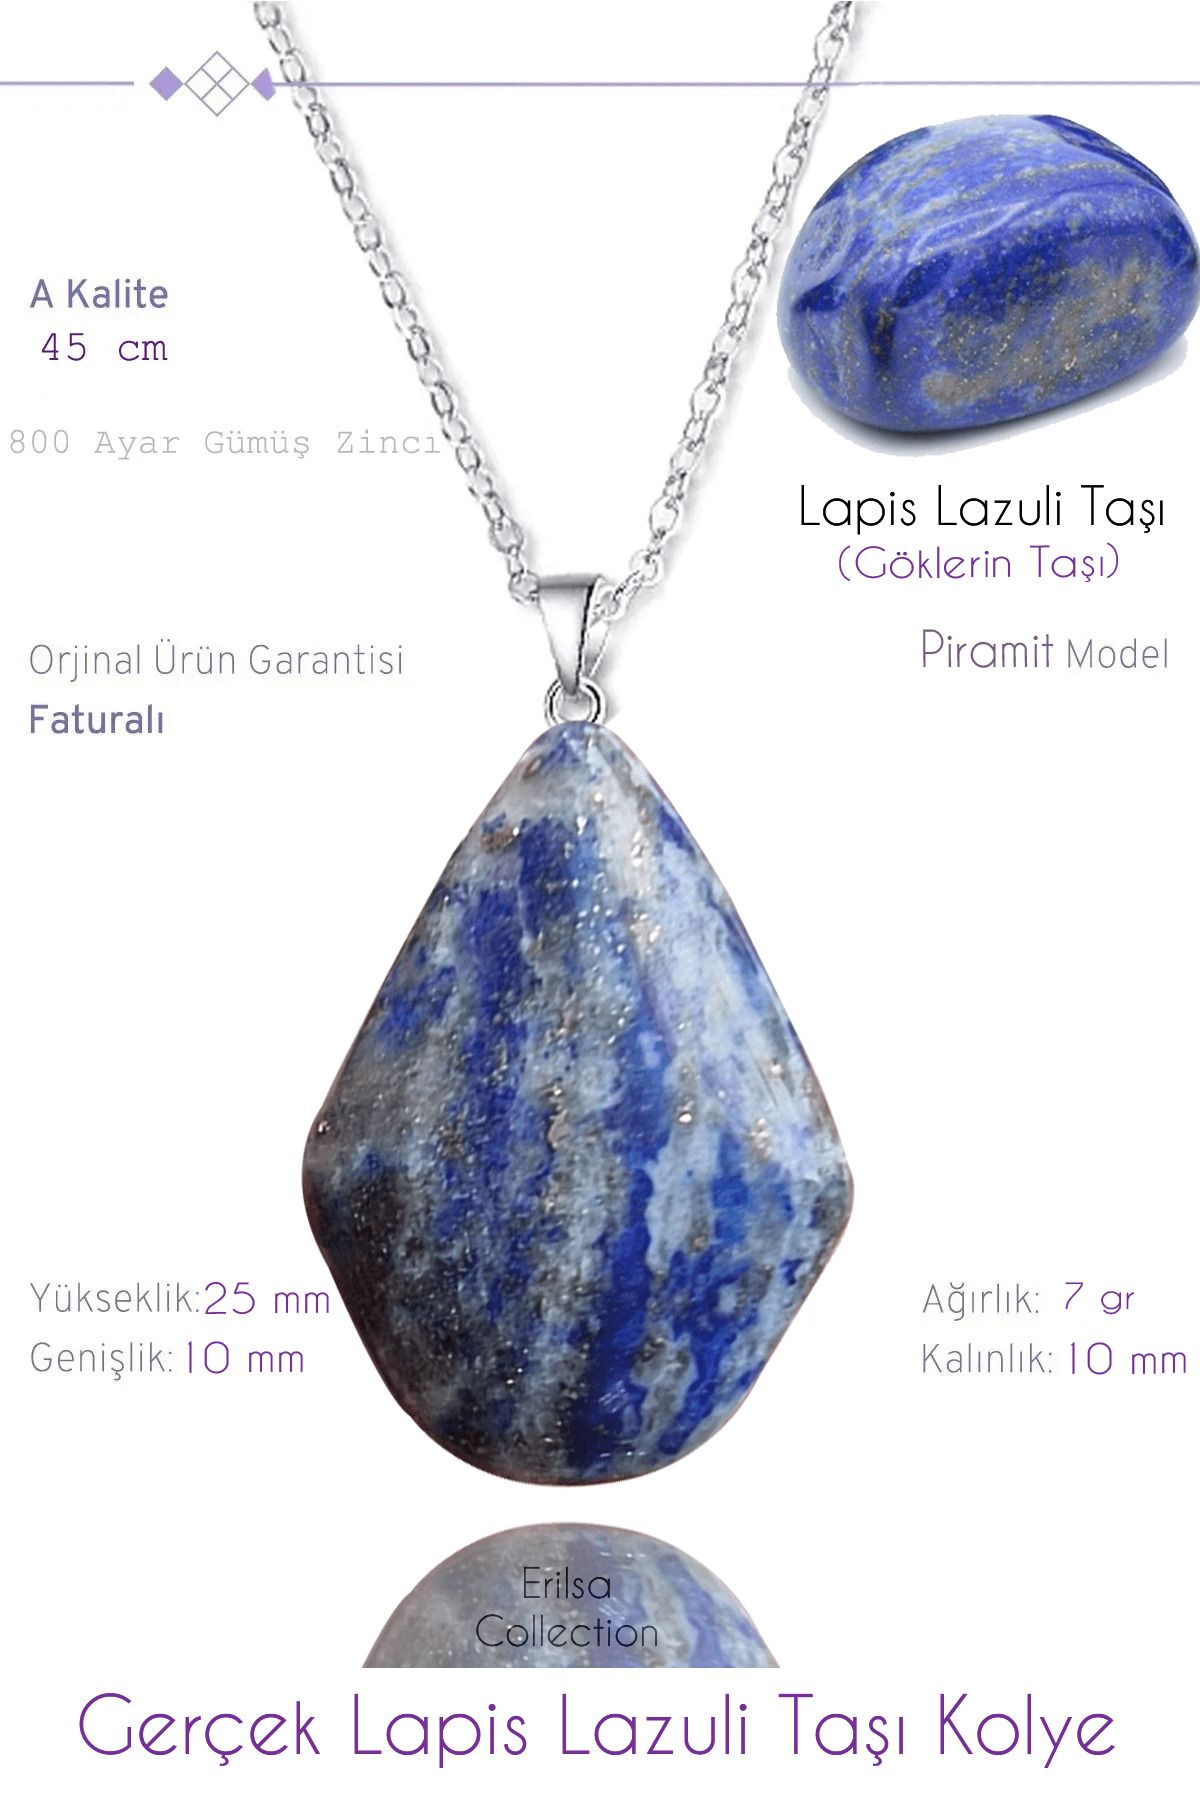 Tesbih Atölyesi Sertifikalı Gerçek Piramit Model Lapis Lazuli Taşı Kolye